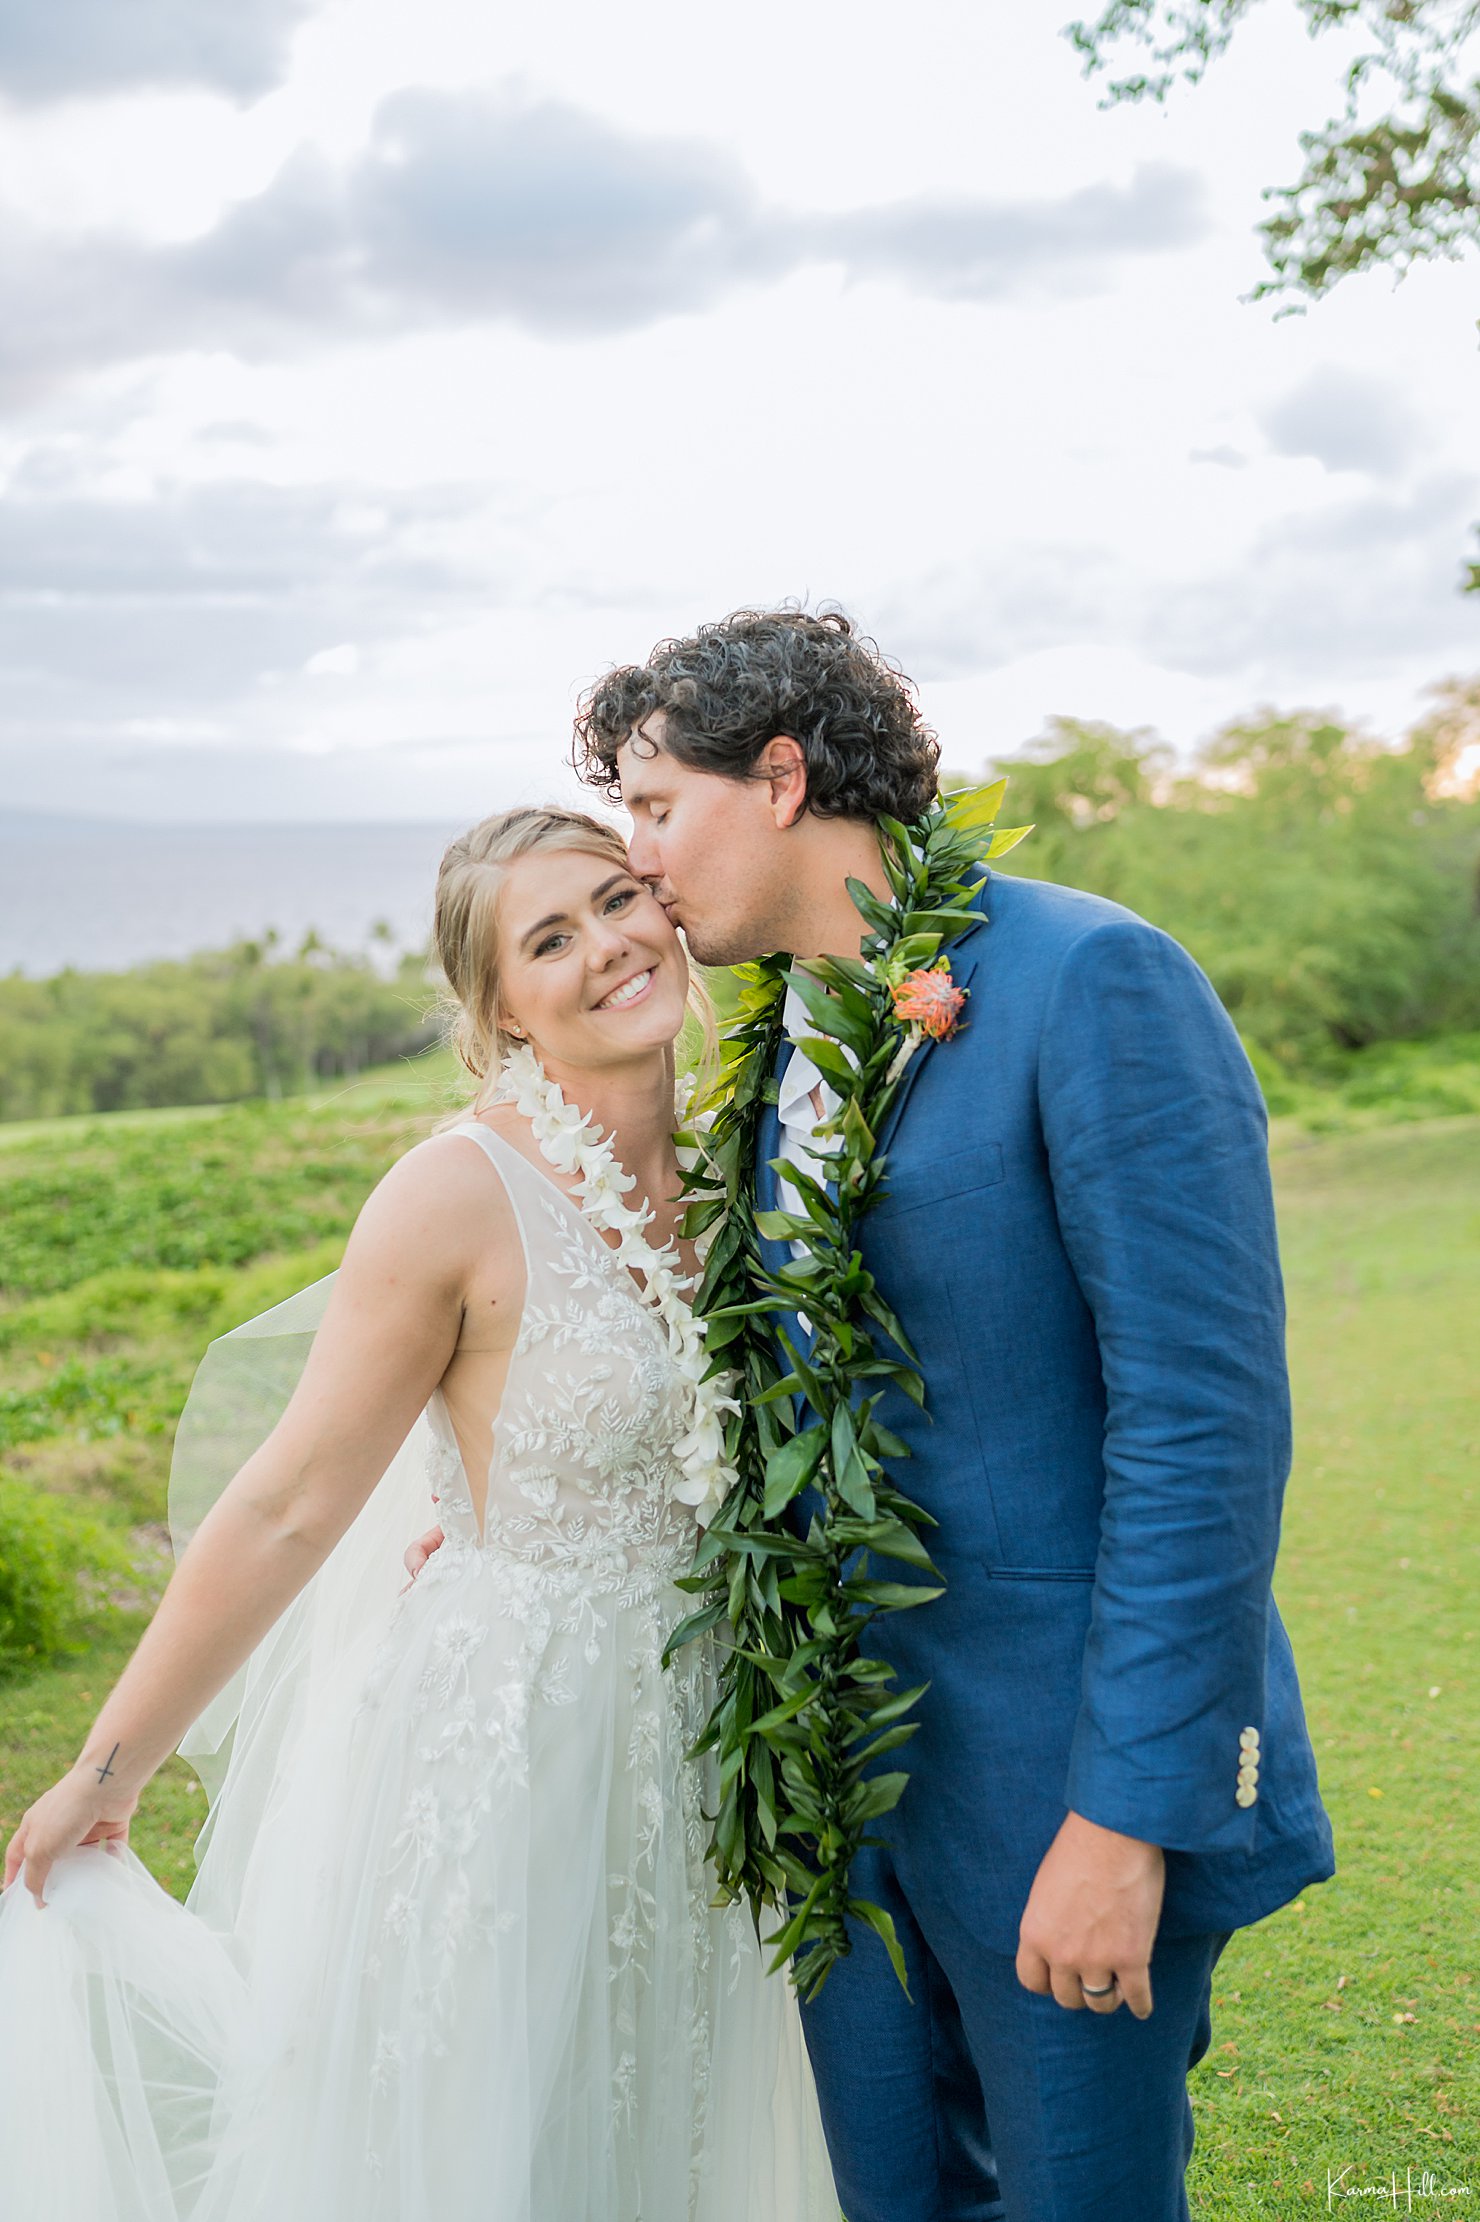 Hawaii venue wedding photography